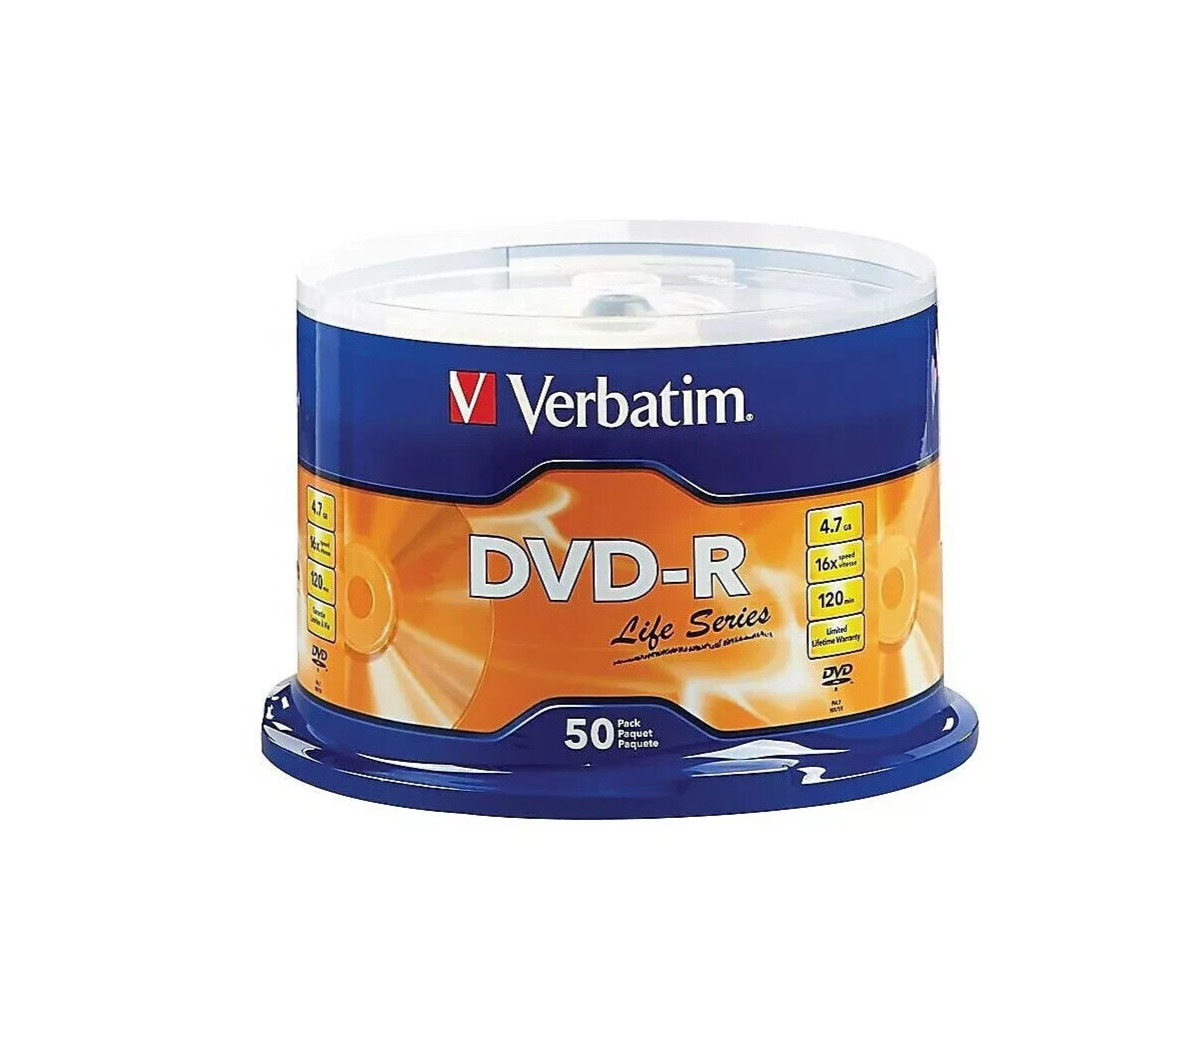 50 VERBATIM Blank DVD-R DVDR 16X 4.7GB Recordable Logo Branded Media Disc 97176